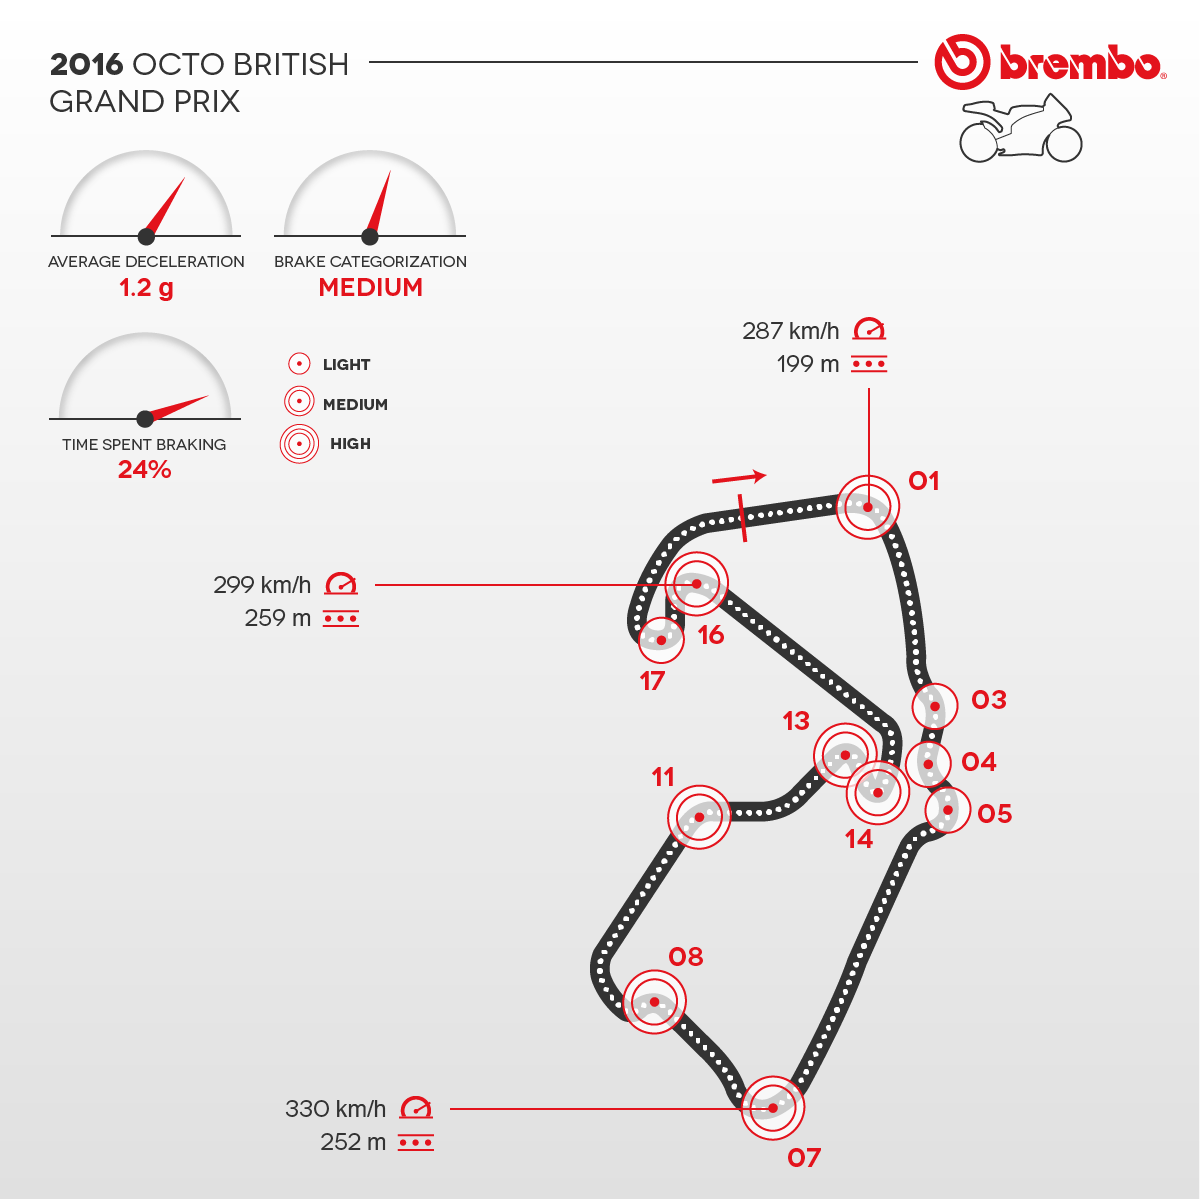 Rappresentazione dettagliata del circuito di Silverstone 2016 con dettaglio curve